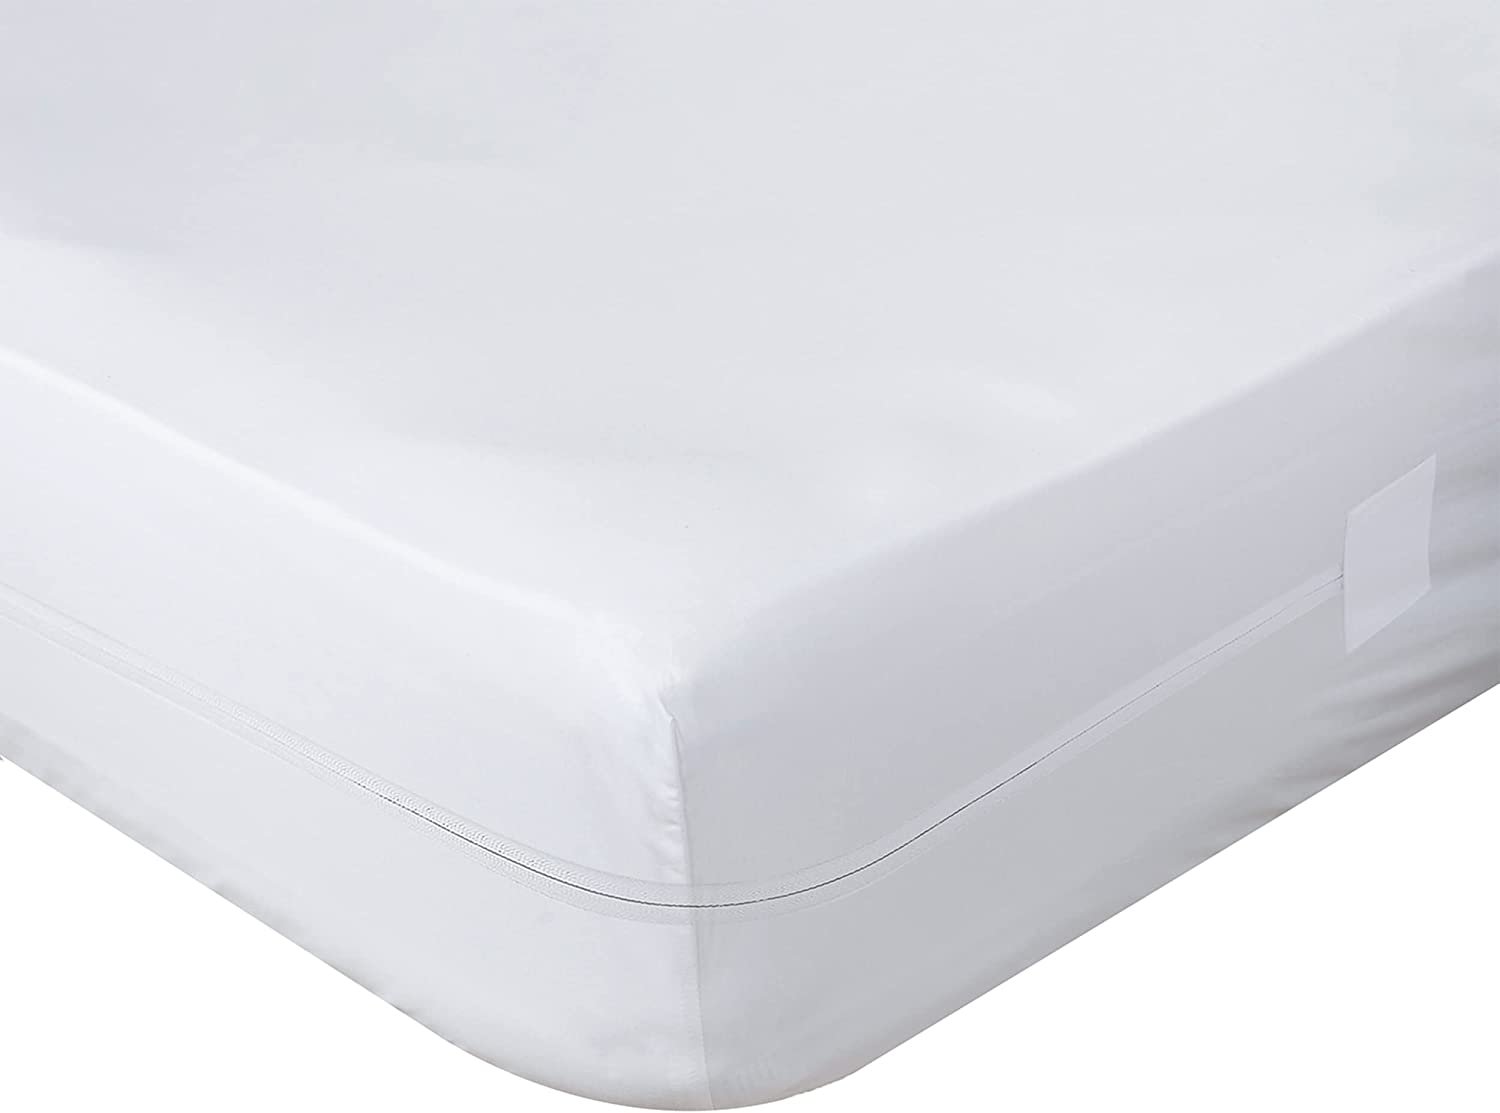  PLIENG Protector de colchón impermeable – Incontinencia cama  almohadillas, suave transpirable todo alrededor elástico funda de cama  ajustable, lavable – para niños, mascotas y personas mayores, blanco – 90 x  190 +